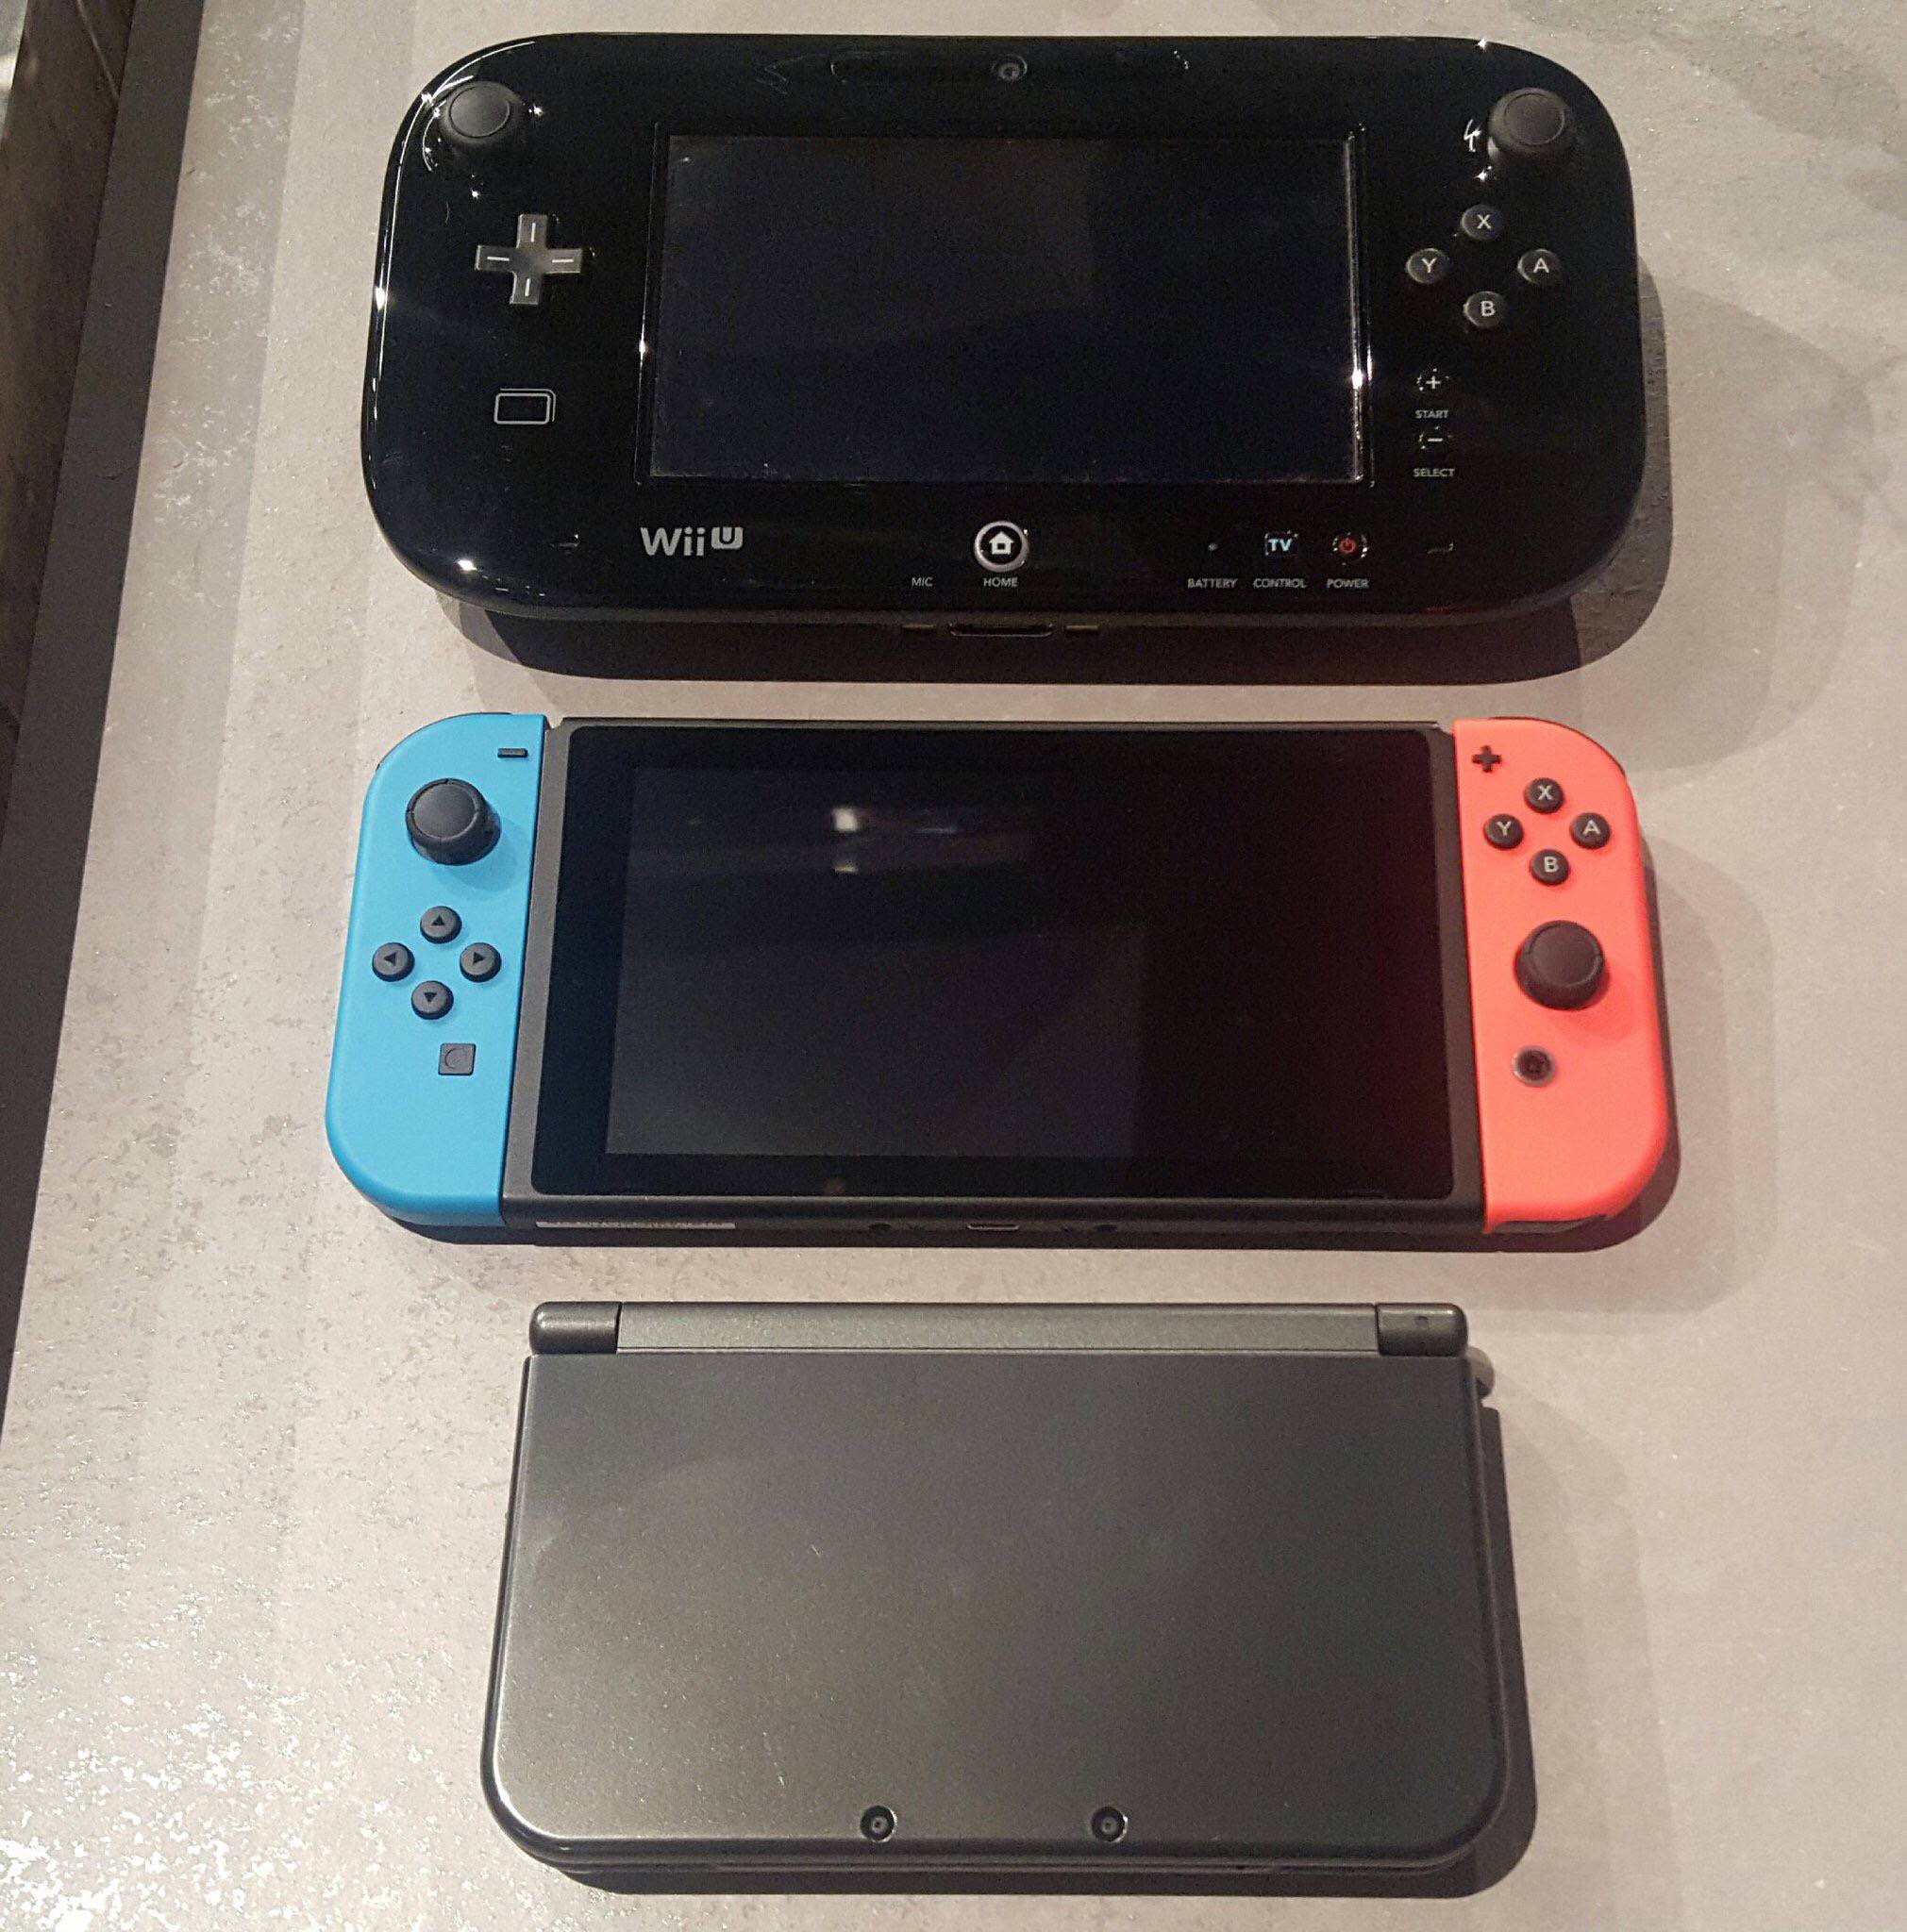 【任天堂スイッチ】「デカすぎ」と話題のWiiU・3DS・Switchの大きさ比較画像がこちら